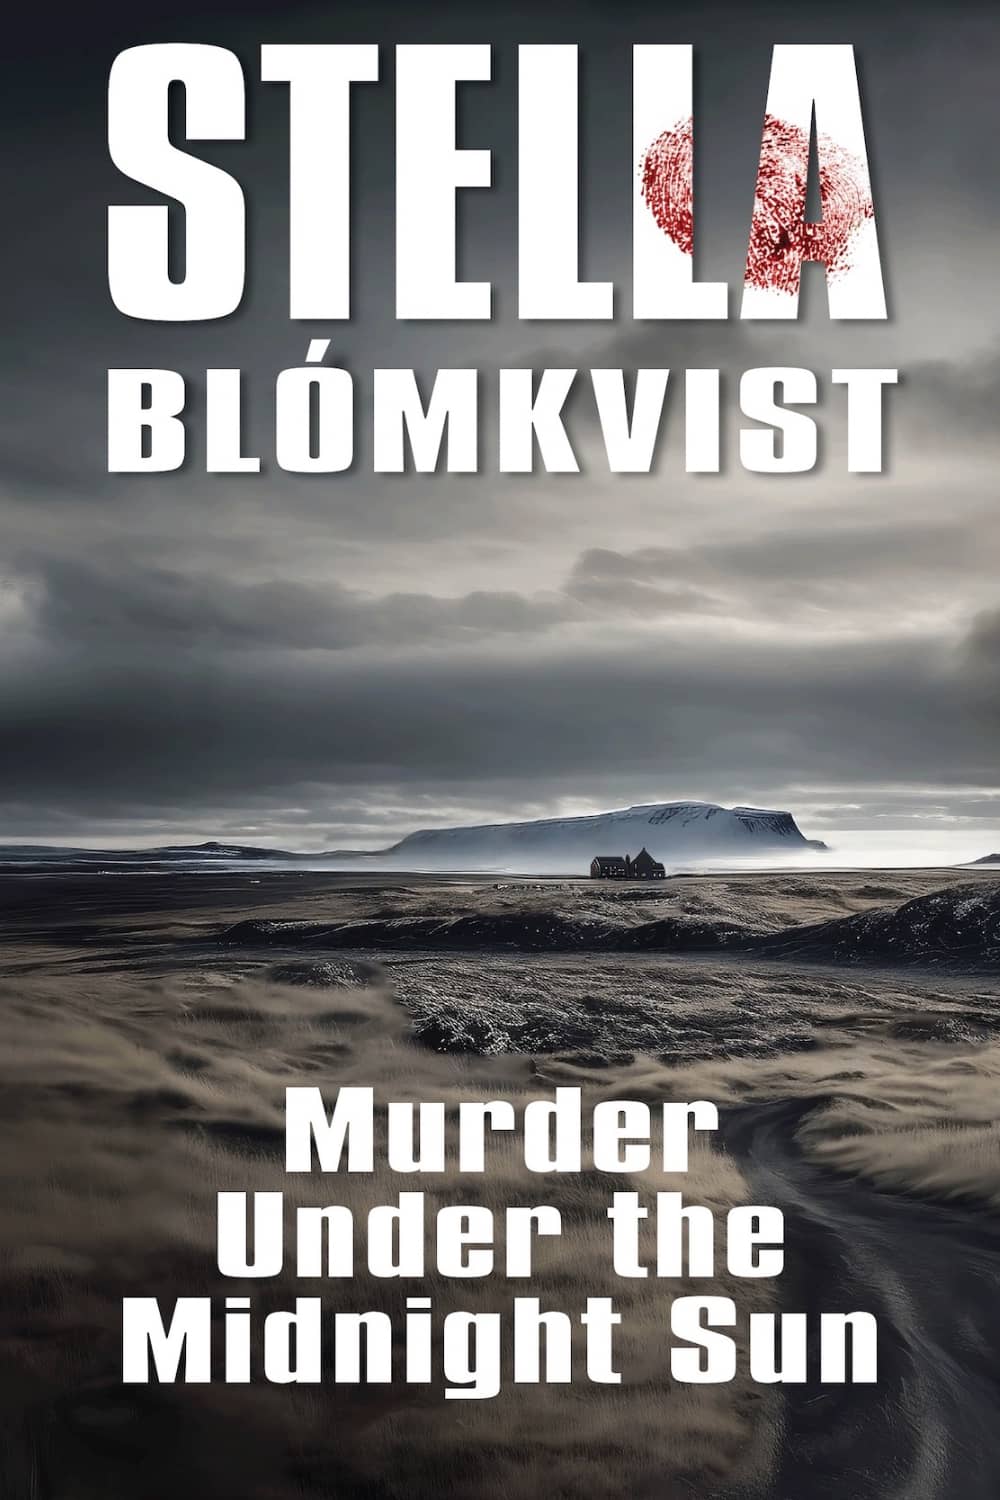 Murder Under the Midnight Sun by Stella Blómkvist